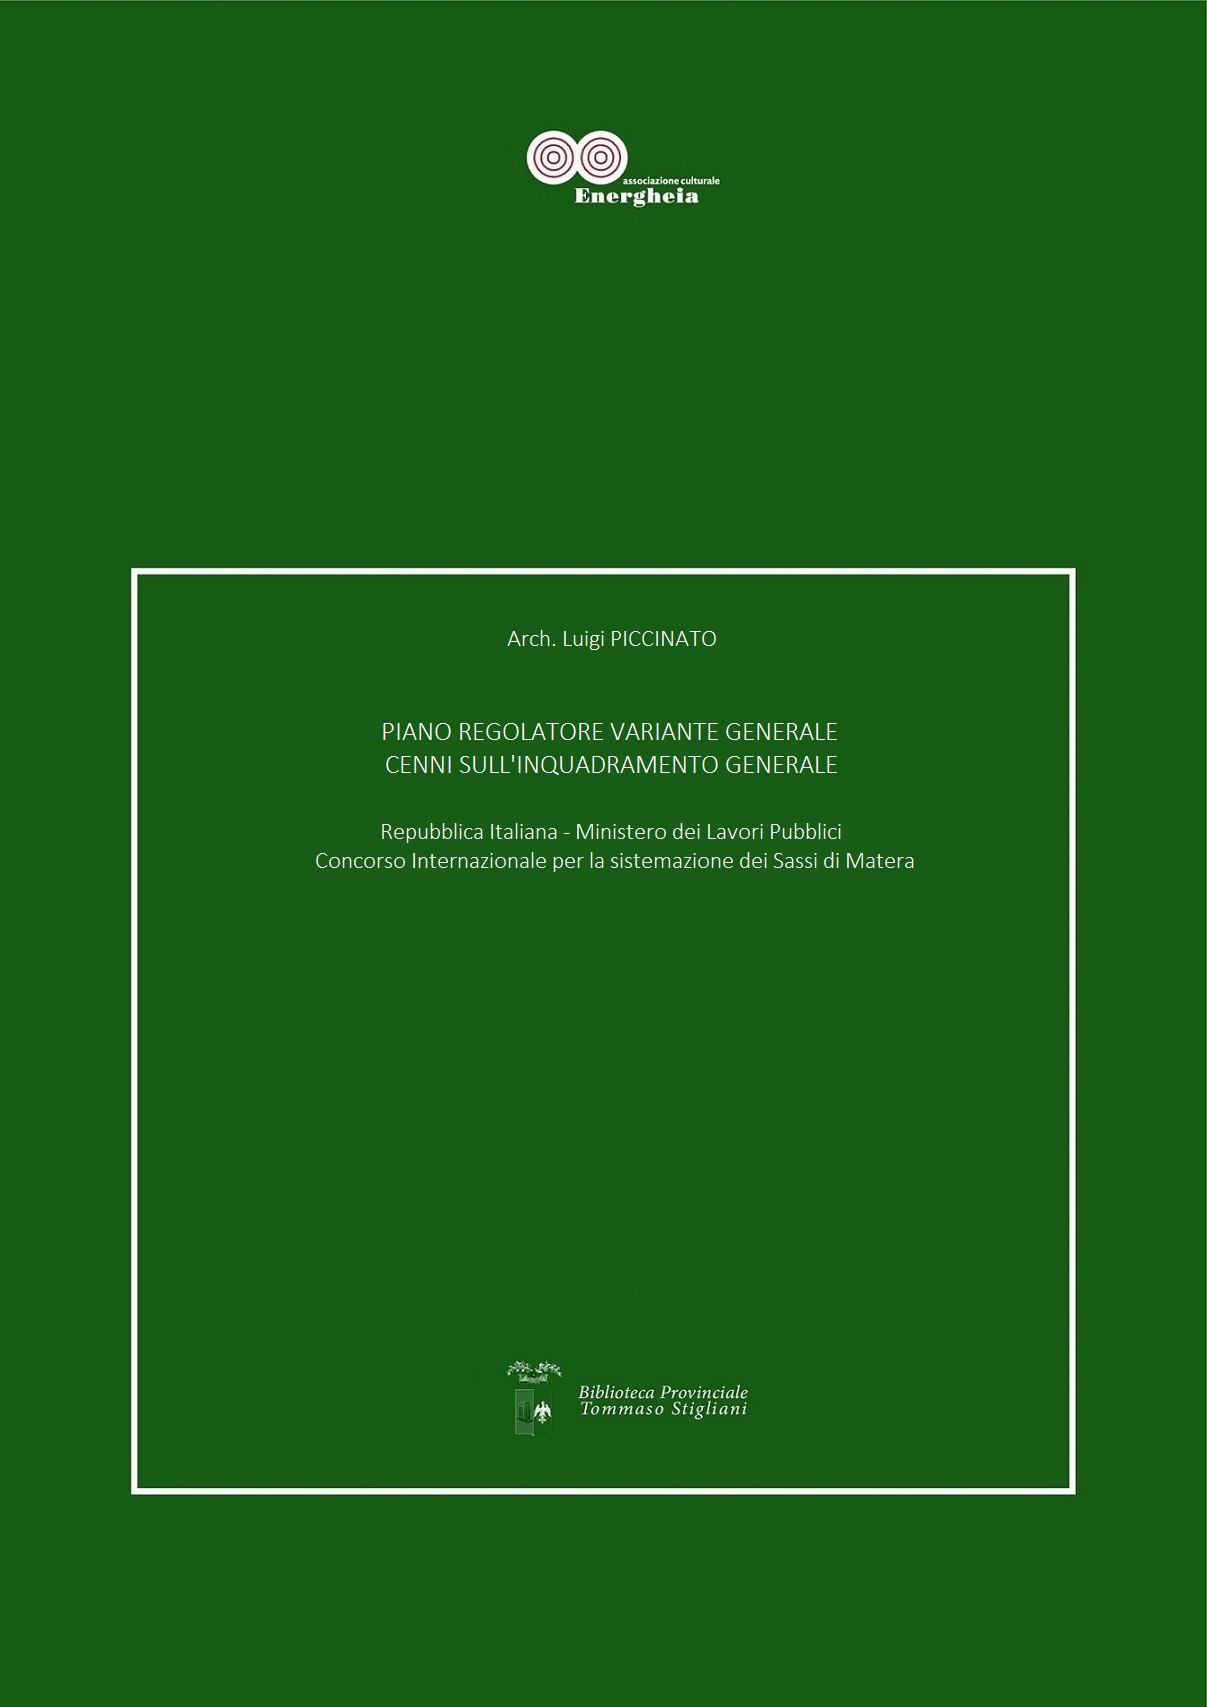 Il testo di Luigi Piccinato & Carlo Carreras: Piano Regolatore Variante Generale, Cenni sull’inquadramento territoriale  in formato digitale